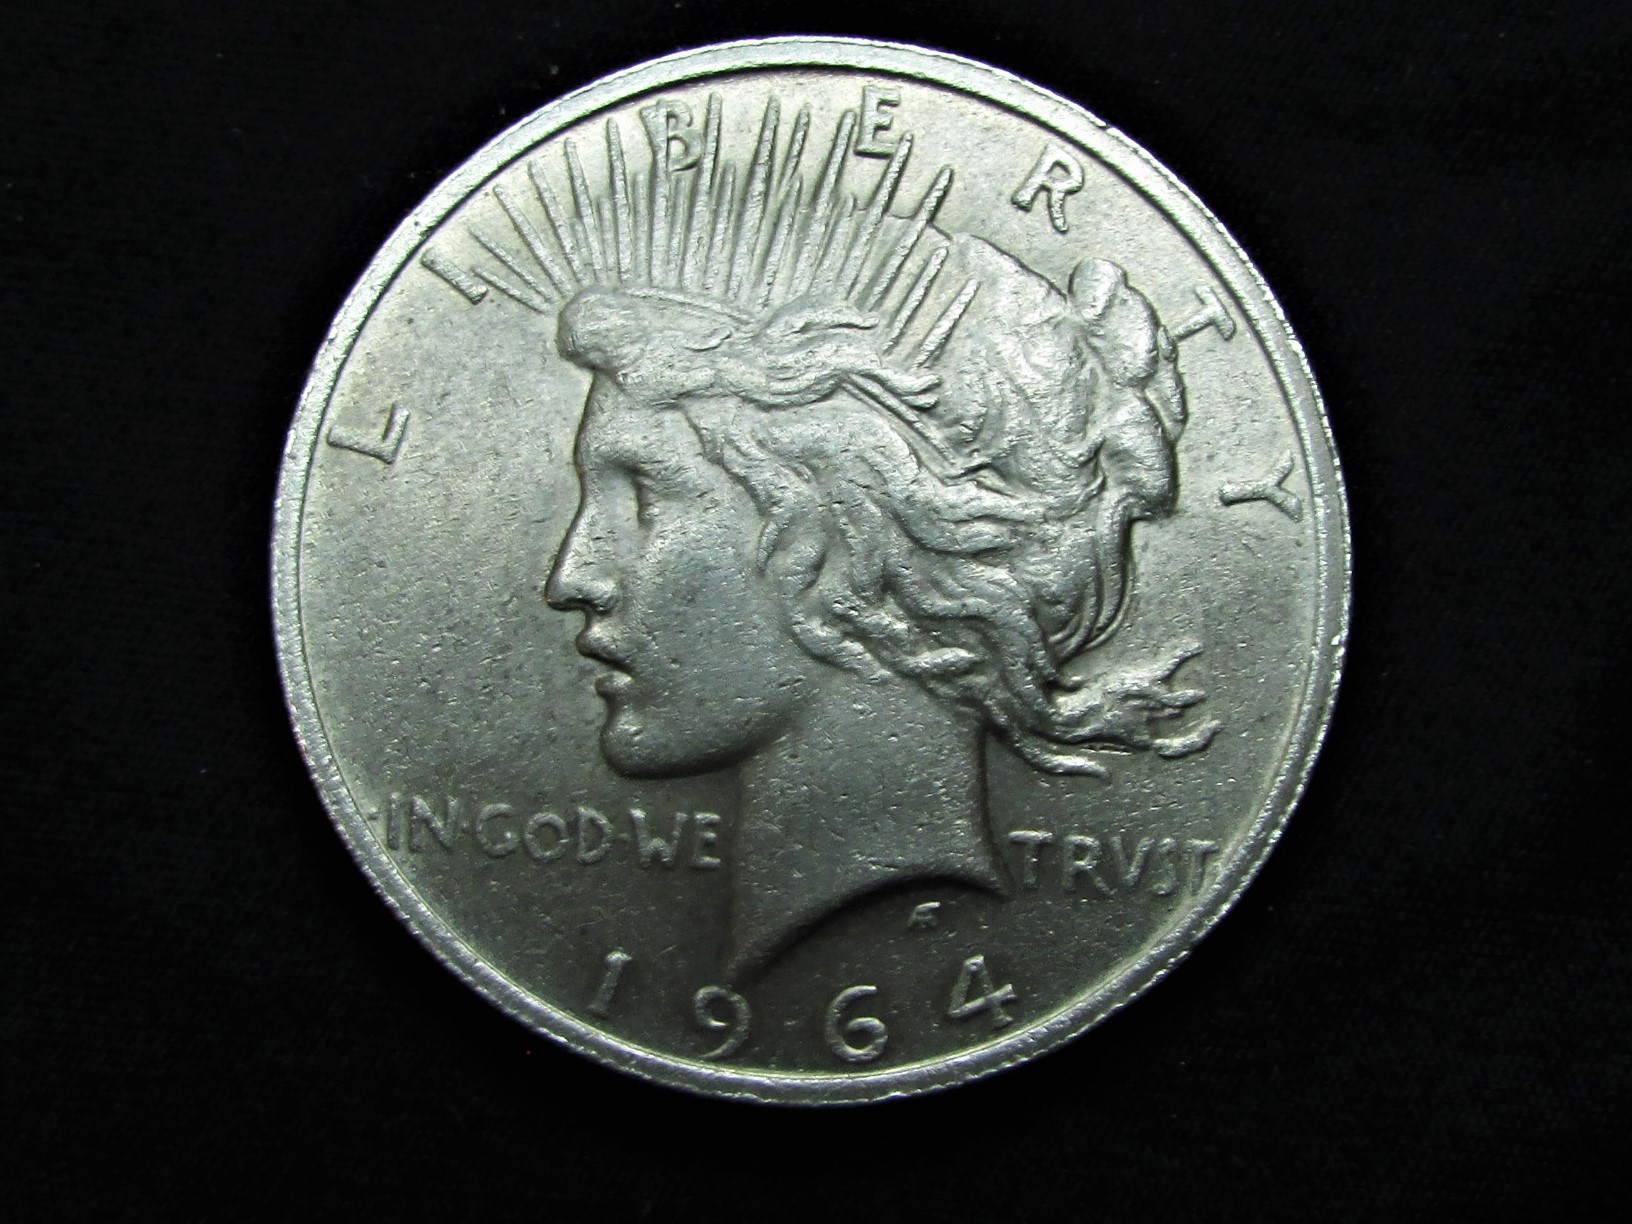 1964-D Peace Dollar (medium relief-circulated) - Die Pair 9 - obverse.JPG